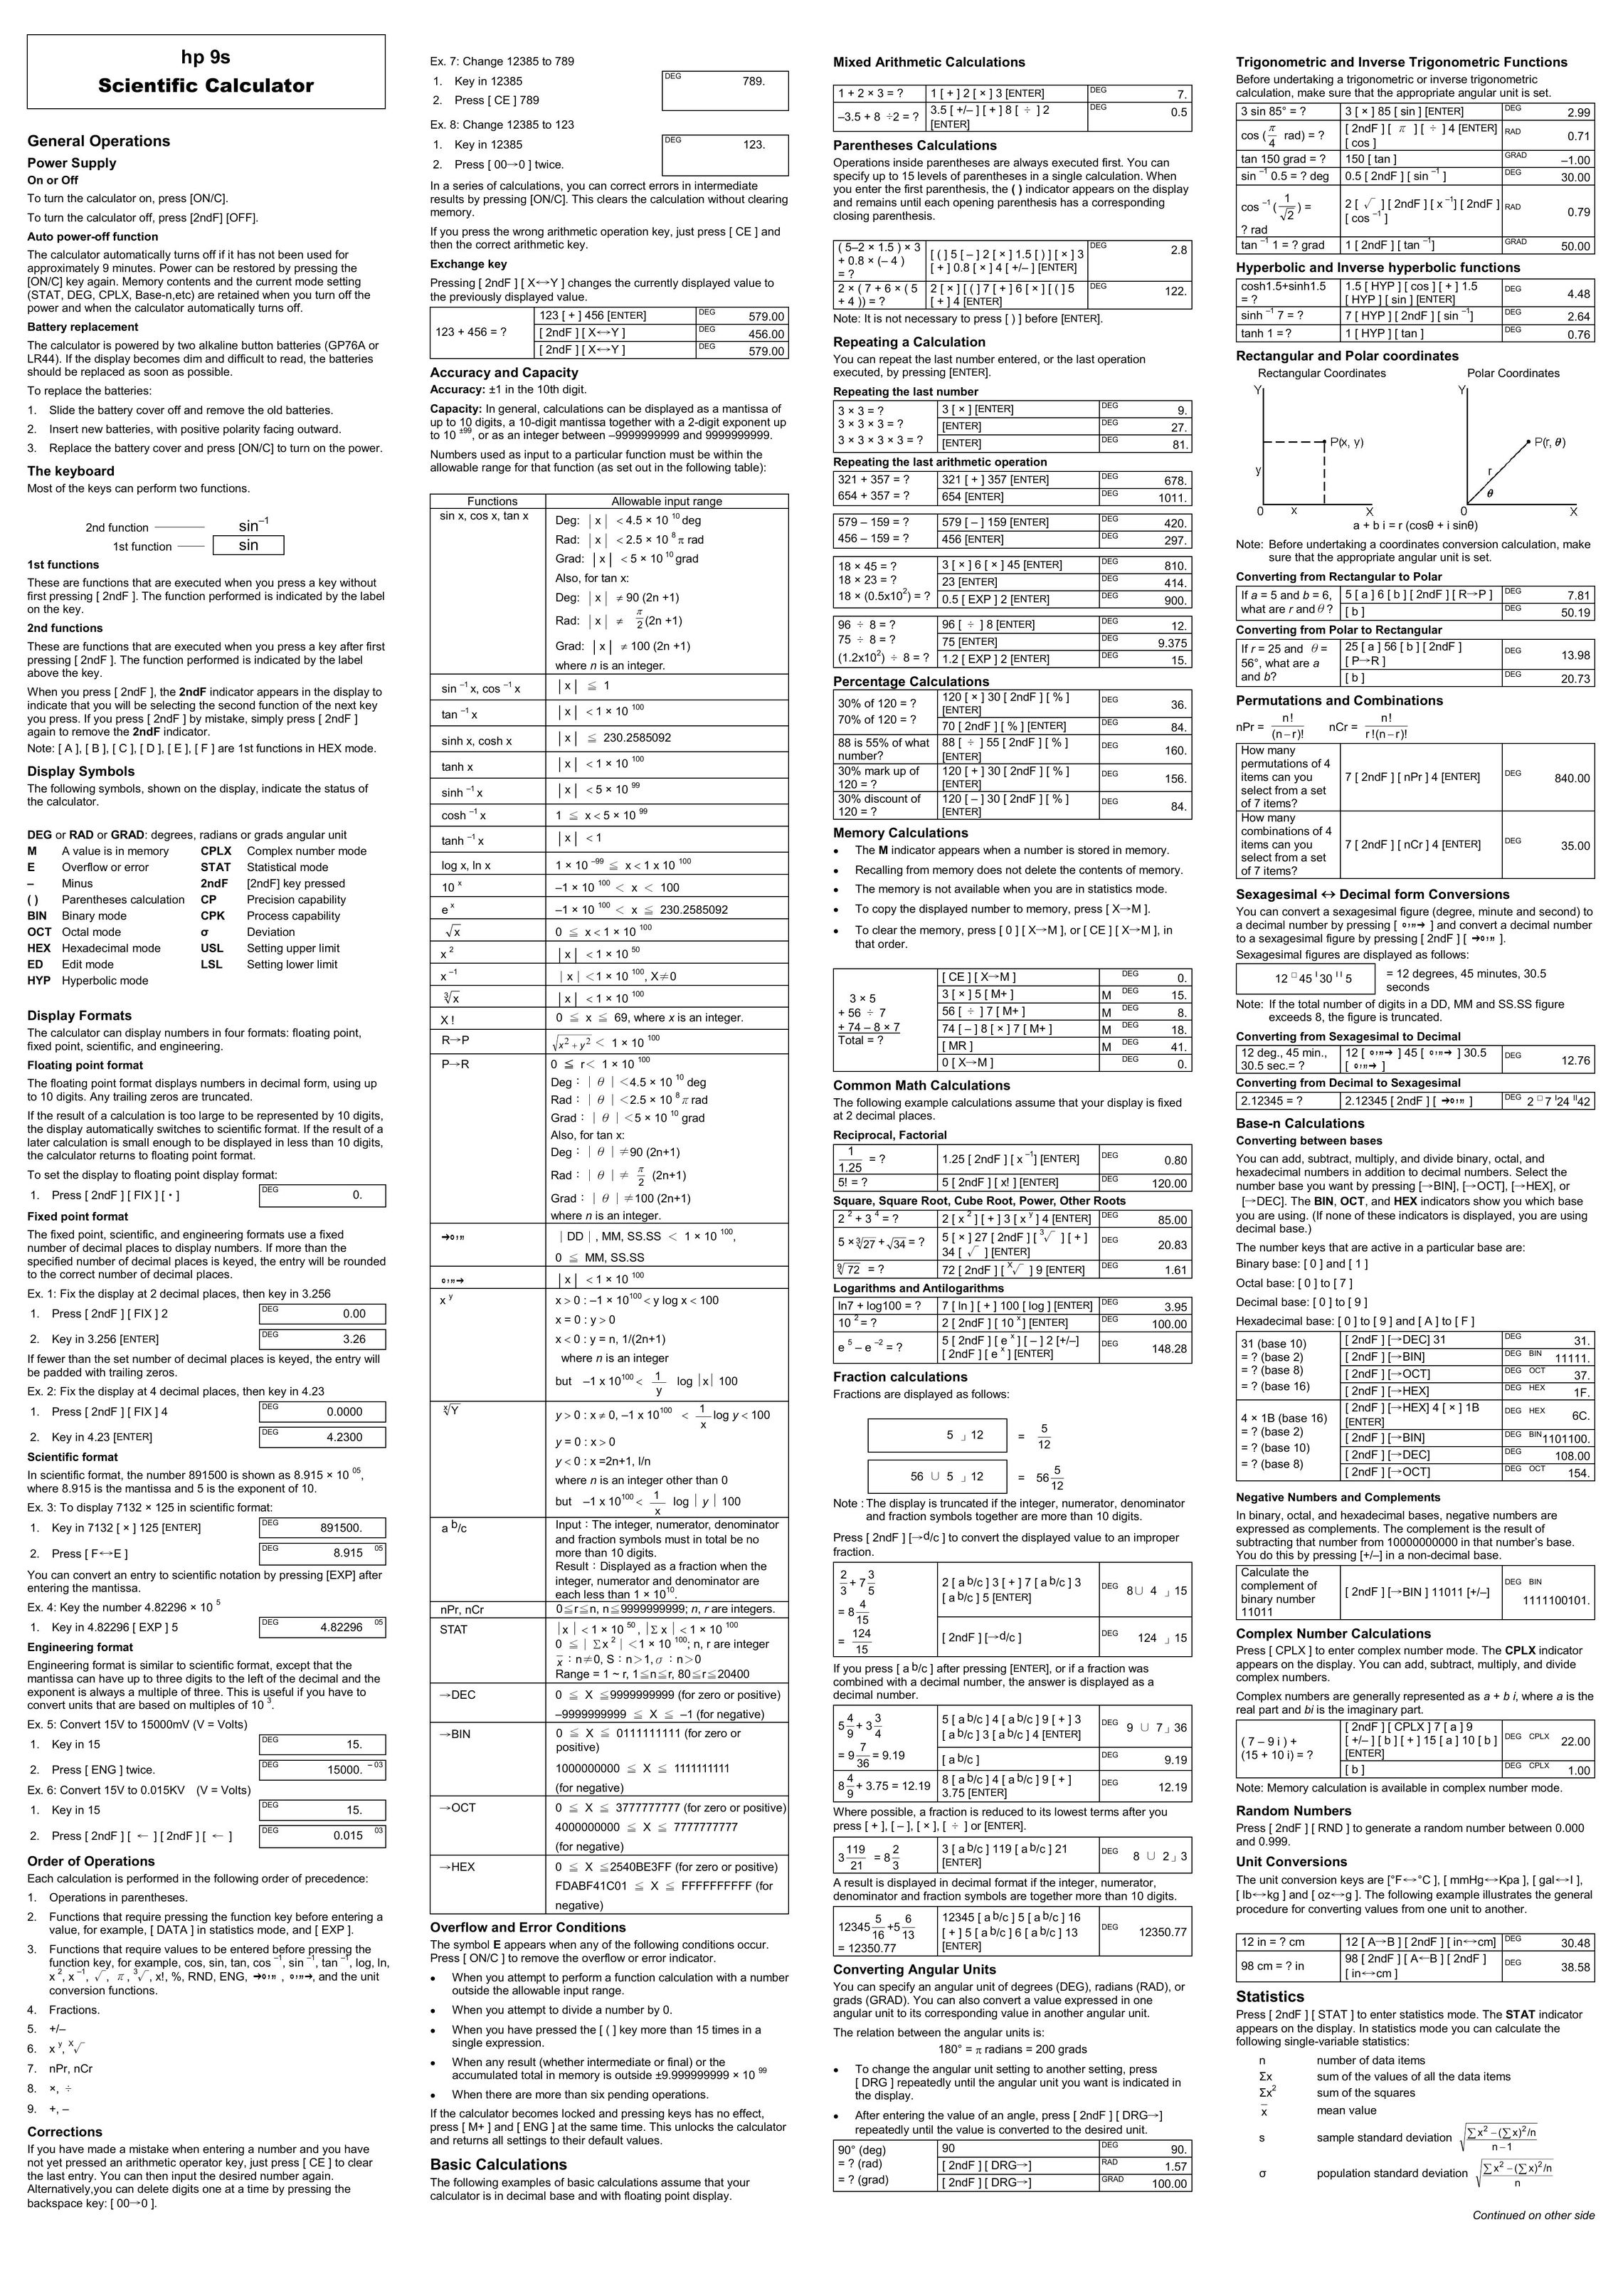 HP (Hewlett-Packard) scientific calculator Calculator User Manual